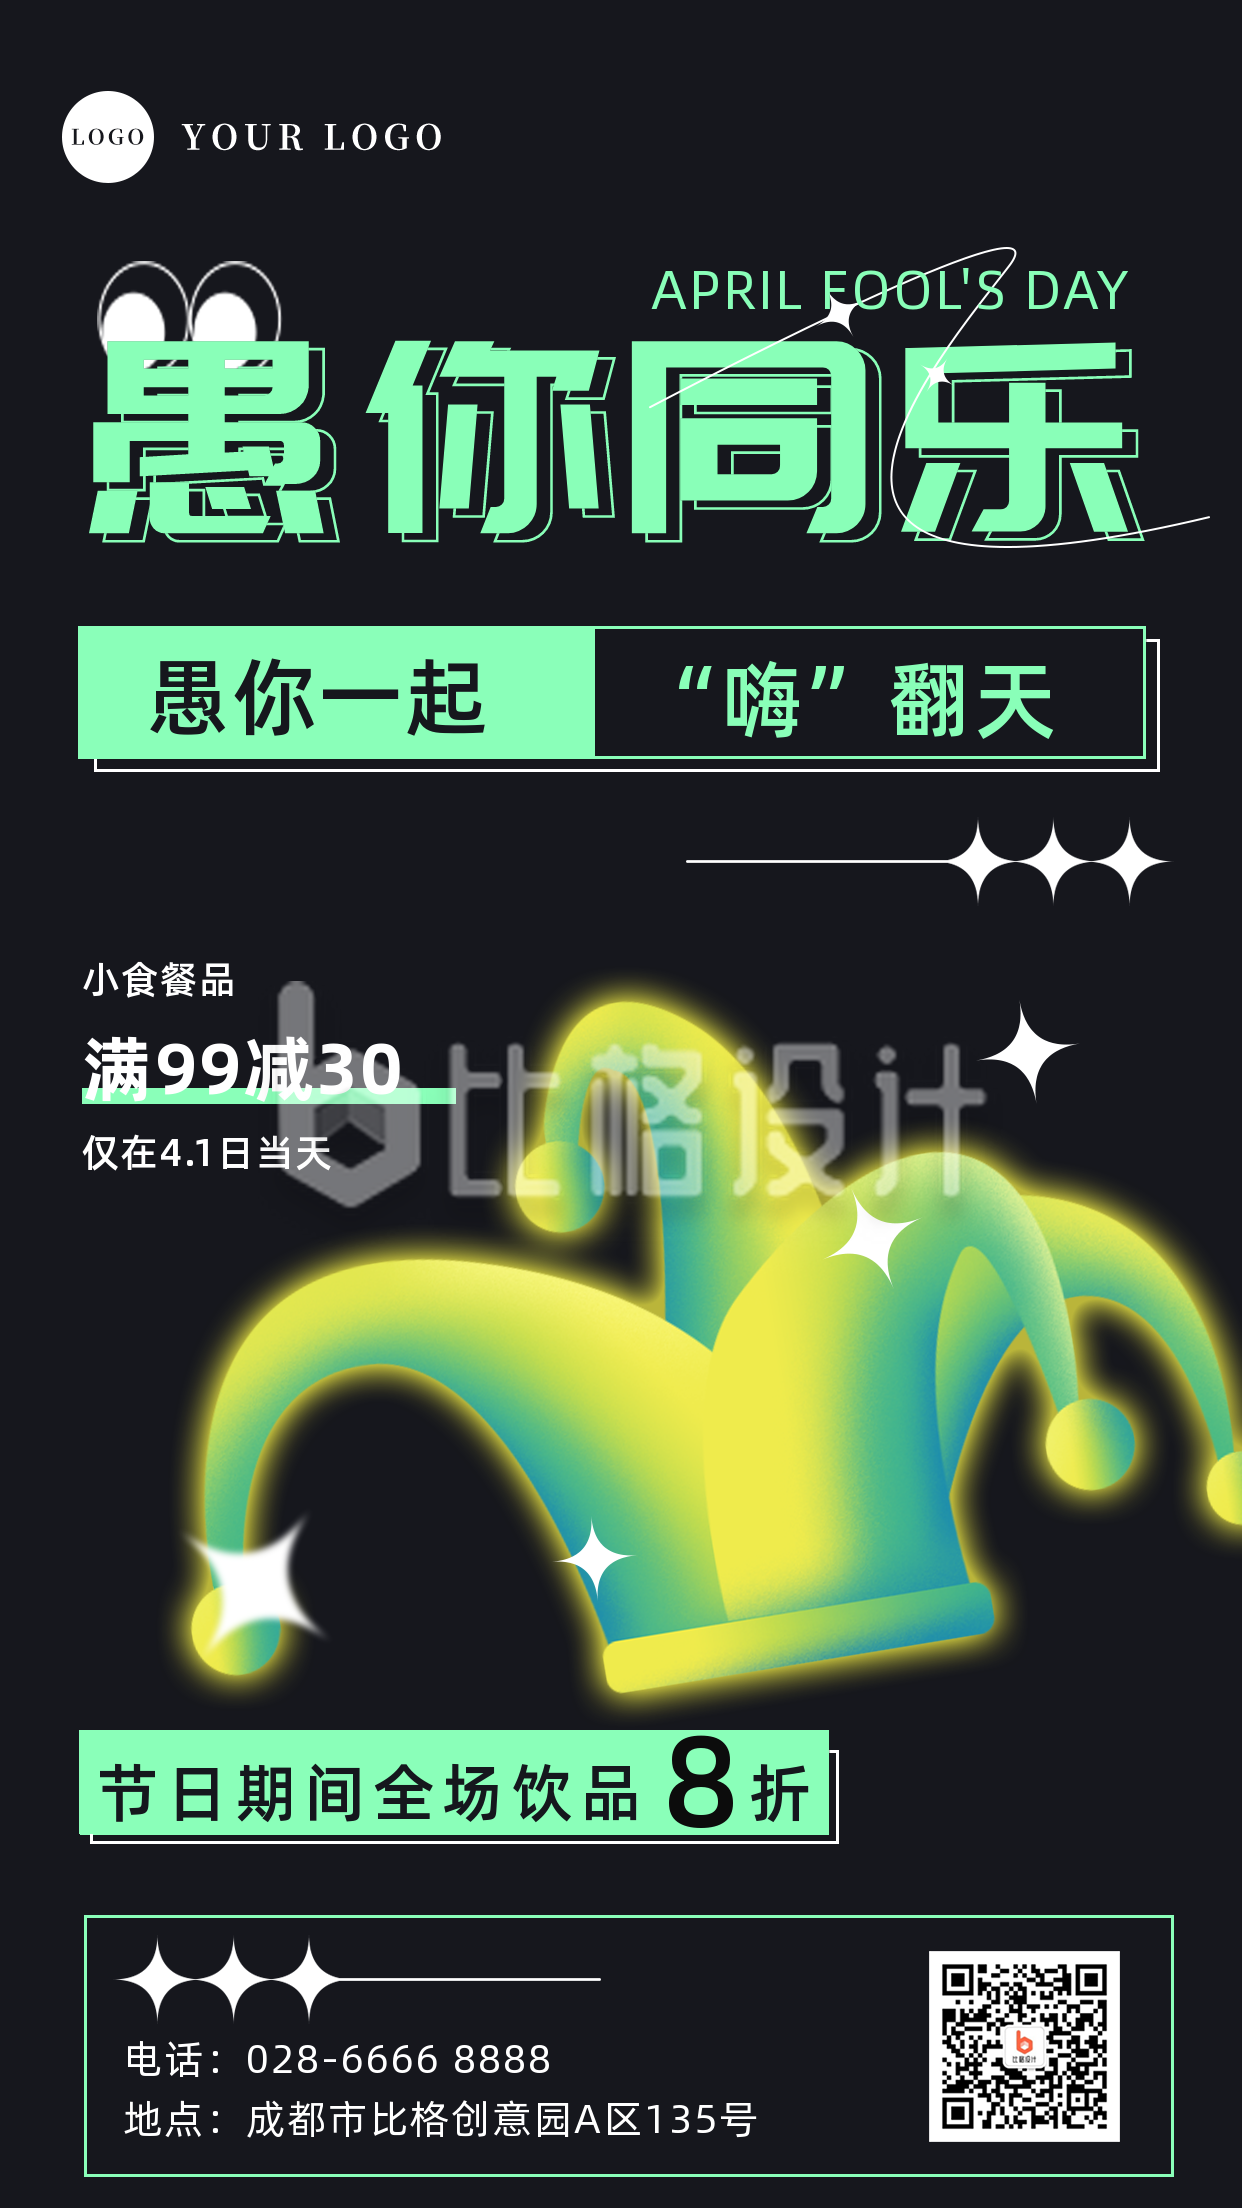 愚人节节日促销祝福手机海报